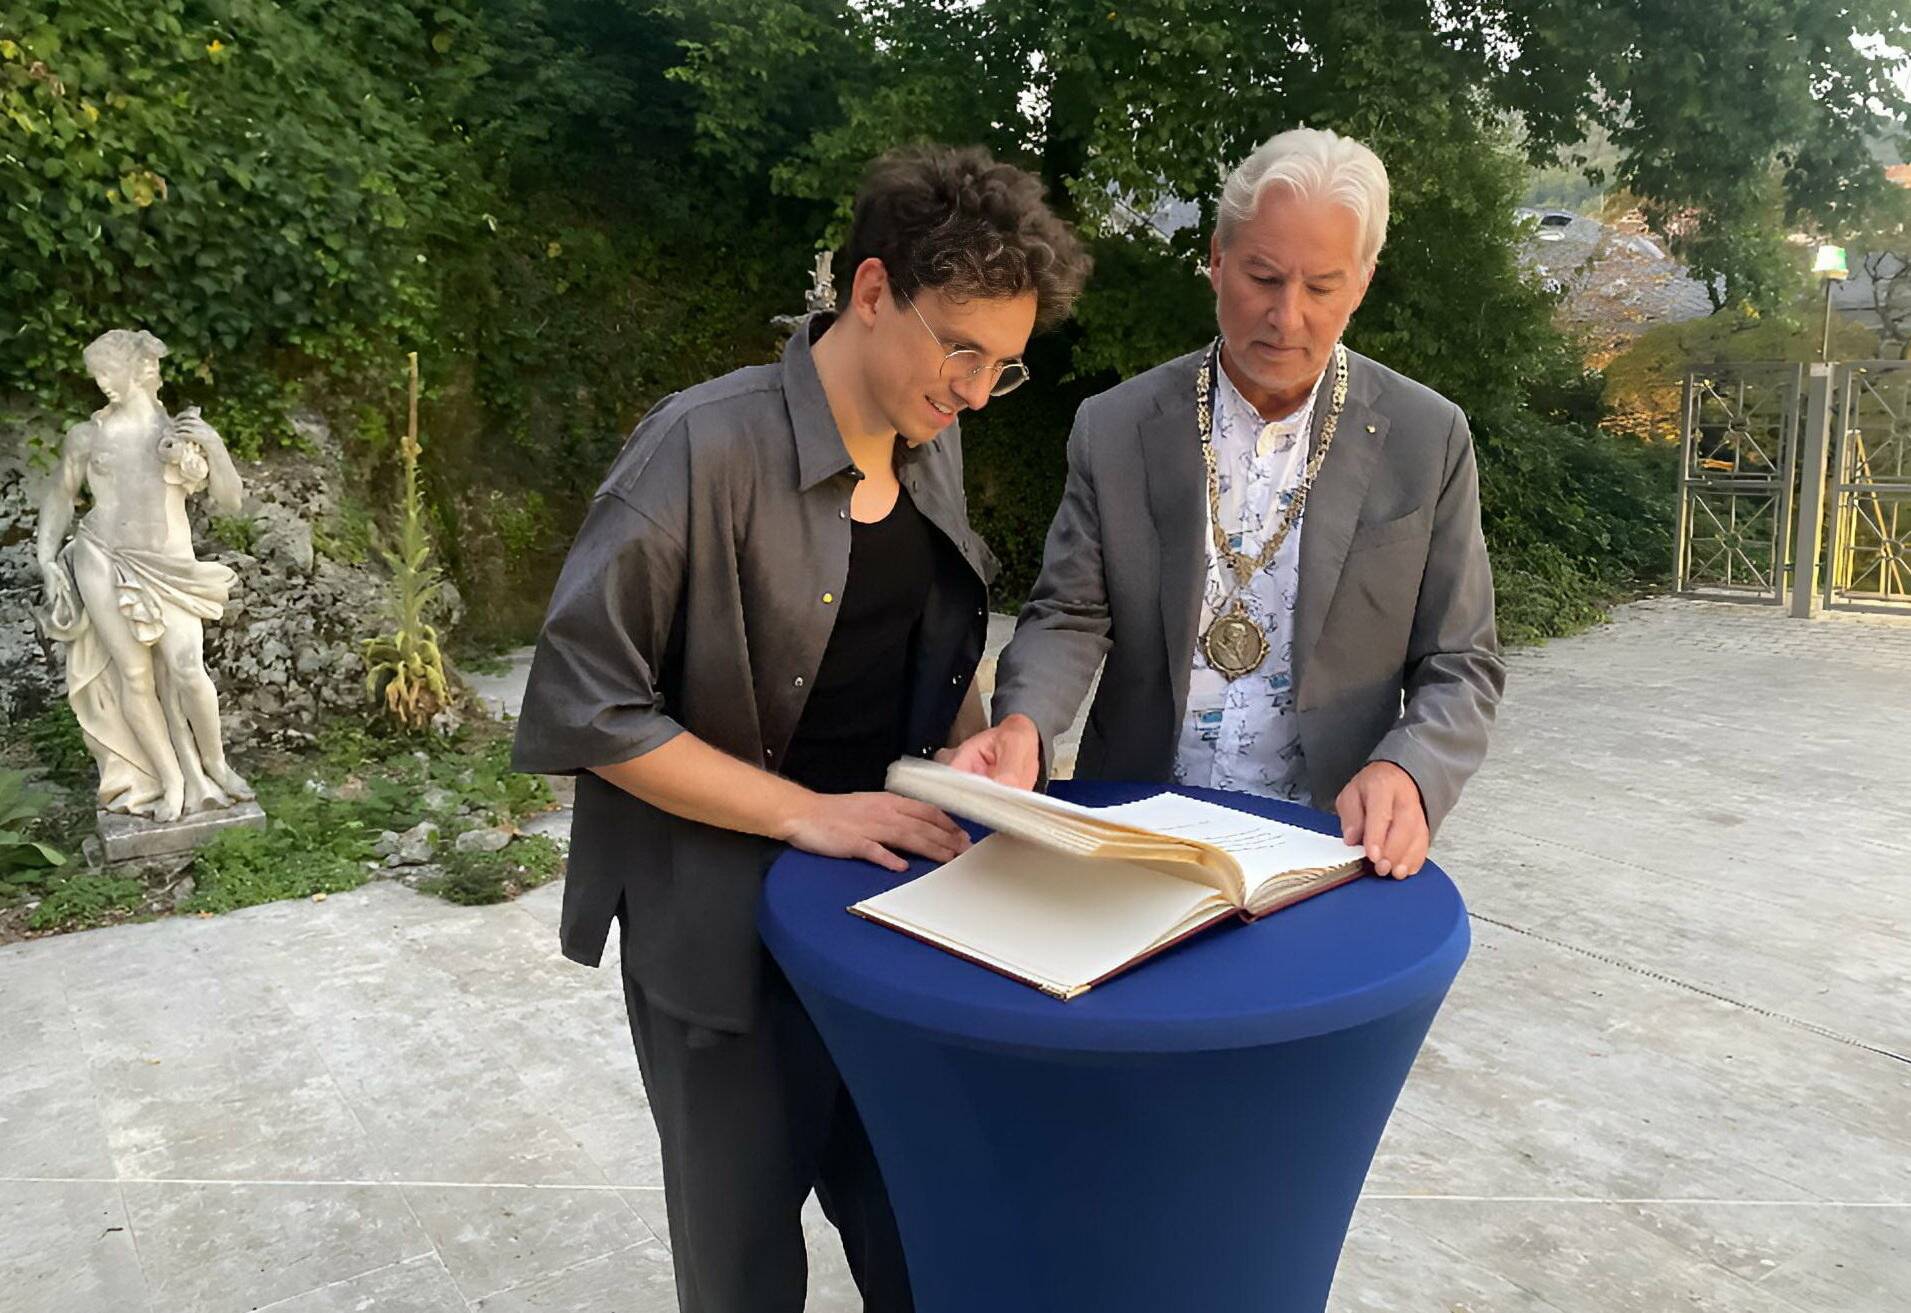 Kamrad bei der Eintragung ins Goldene Buch von Baden-Baden. Rechts der dortige Oberbürgermeister Dietmar Späth.  